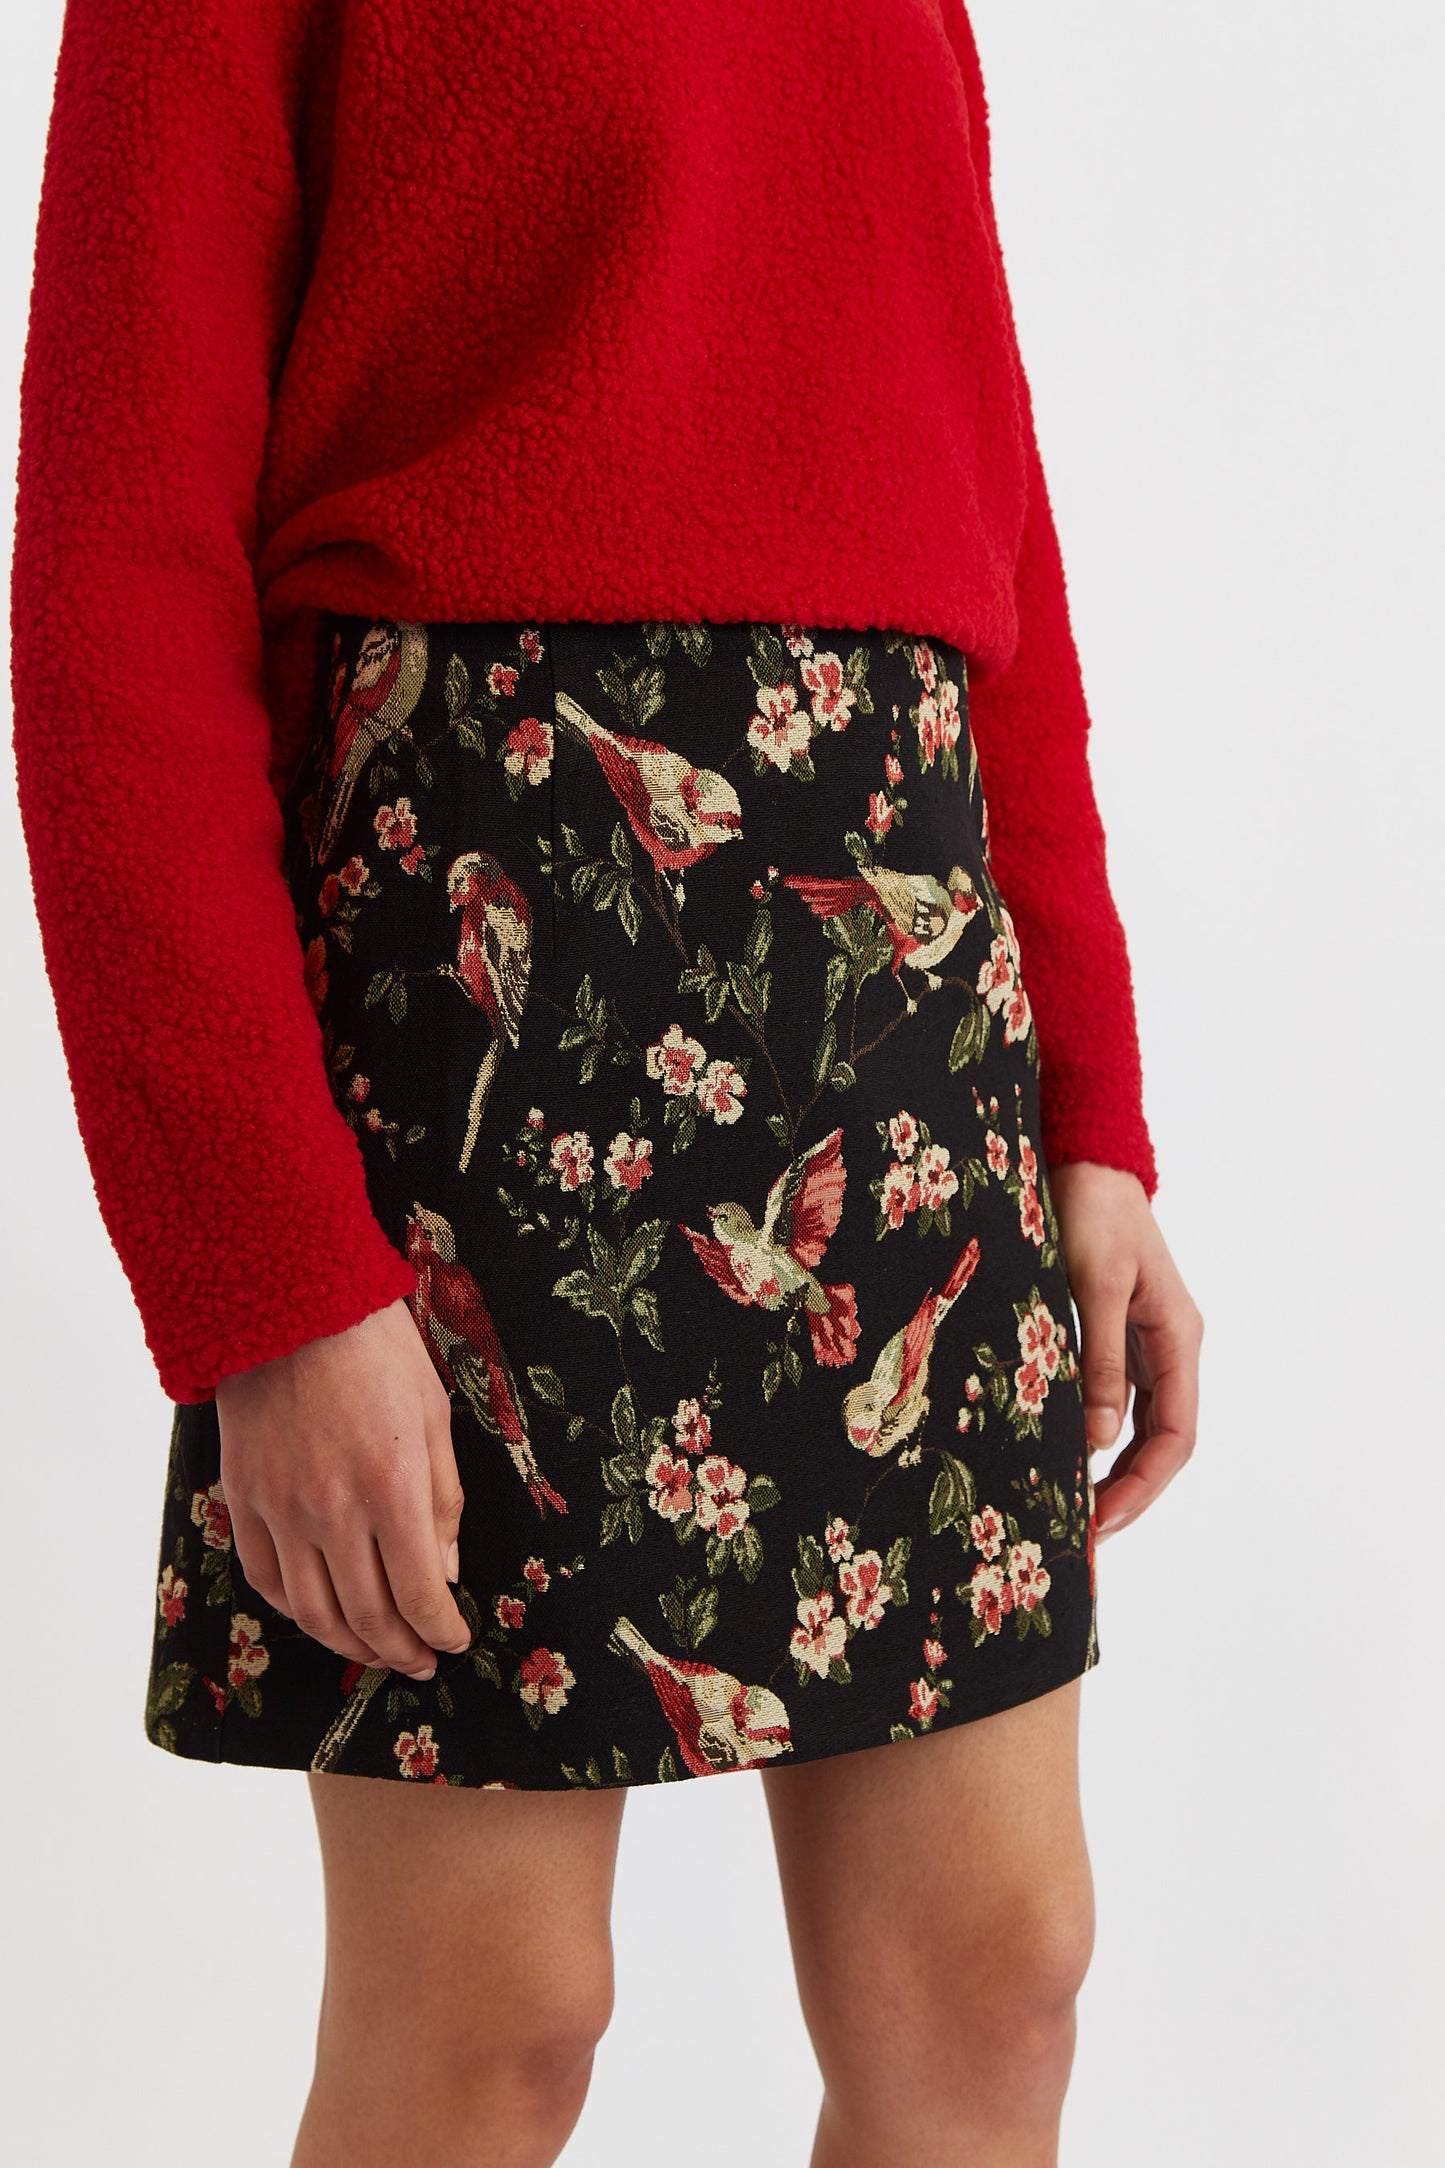 Aubin Tweet Jacquard Mini Skirt